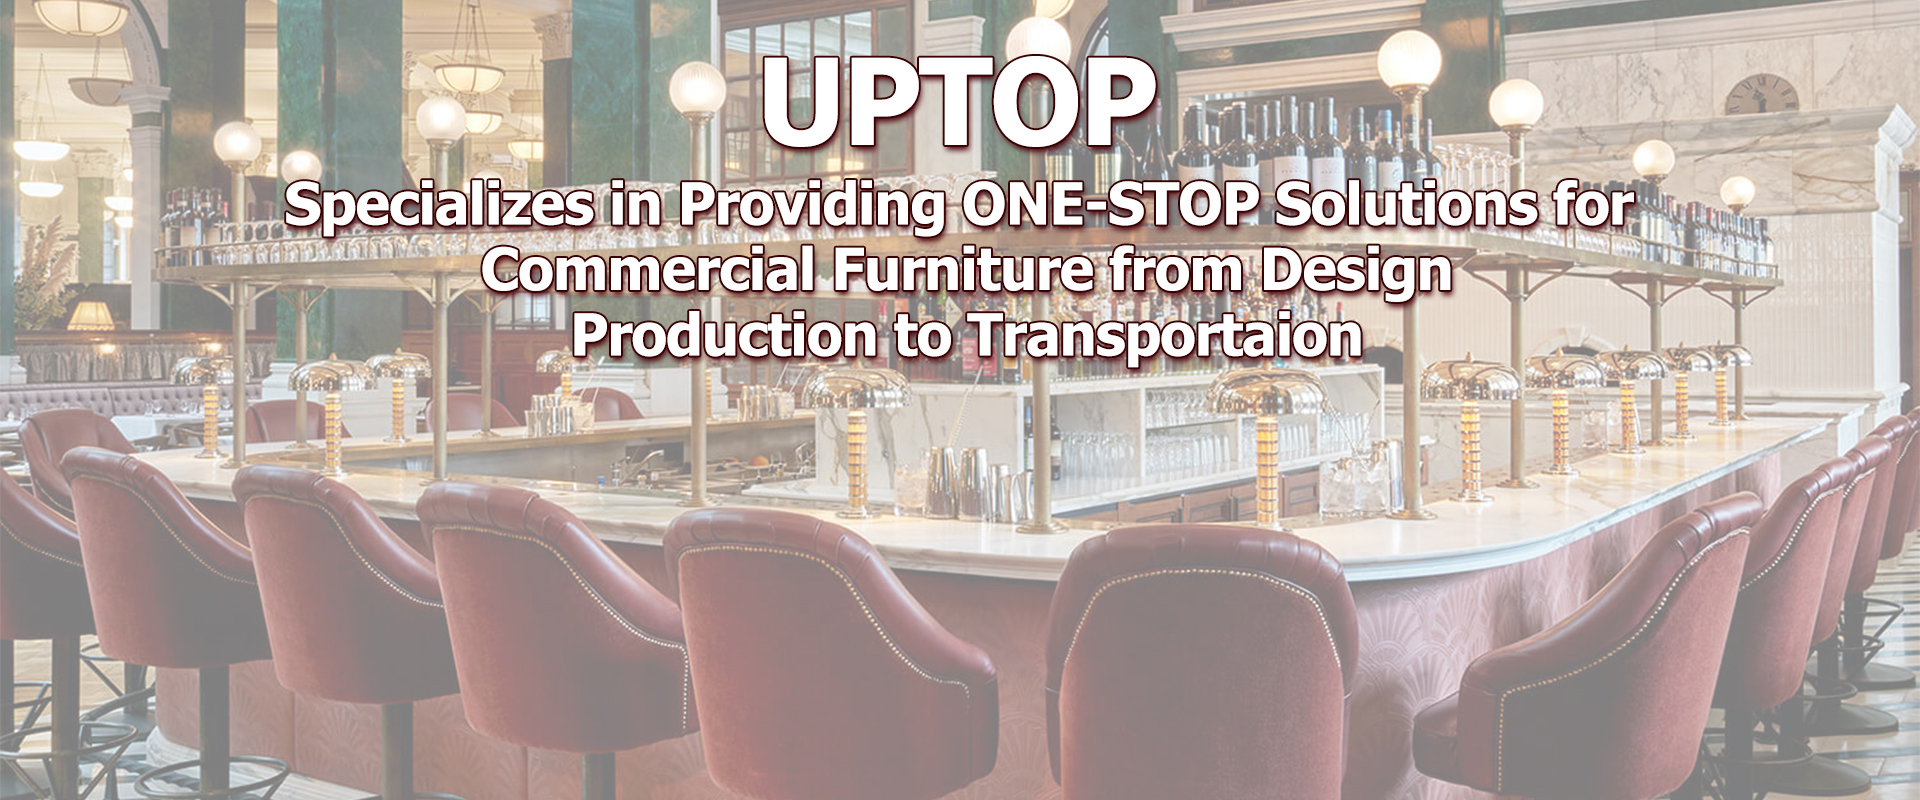 Project Furniture, Restaurant Furniture, Hotel Furniture - Uptop